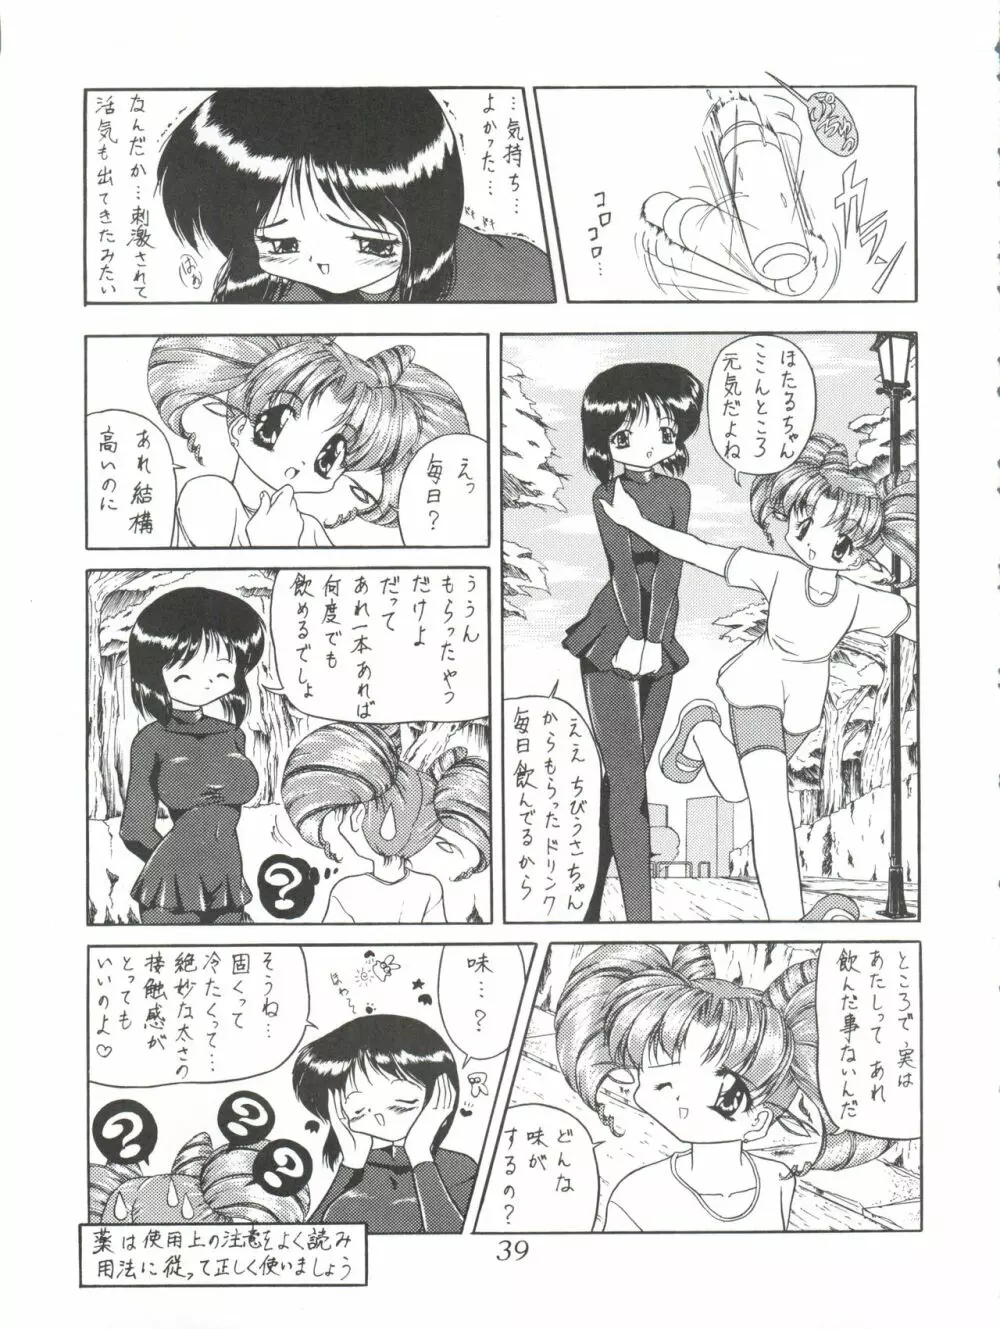 サイレント・サターンSS Vol.1 - page39